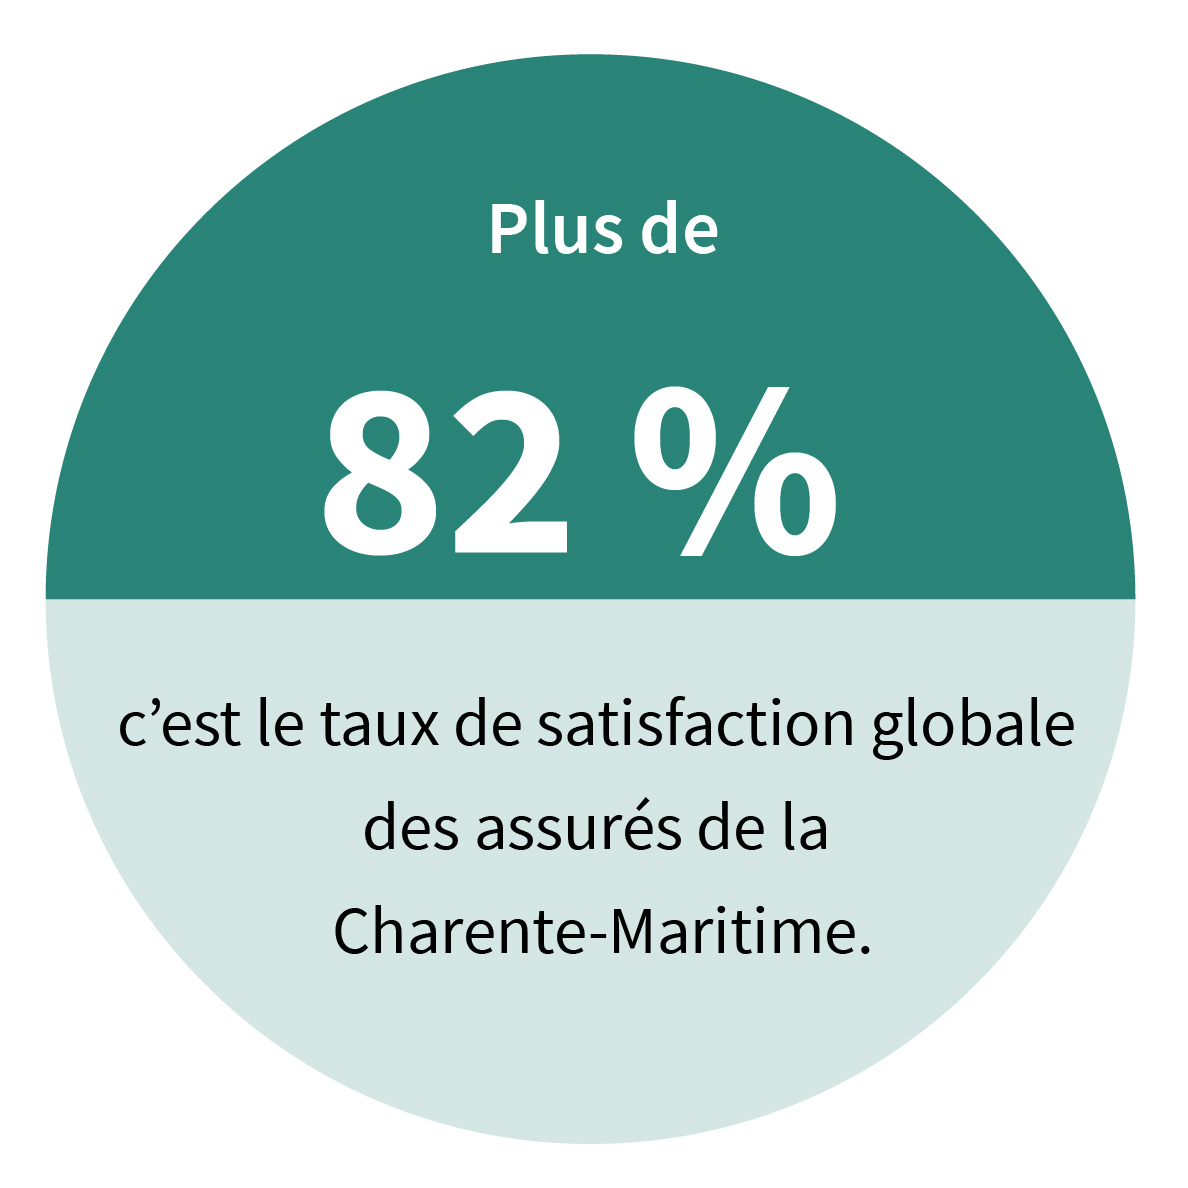 Plus de 82 %, c’est le taux de satisfaction globale des assurés de la Charente-Maritime.